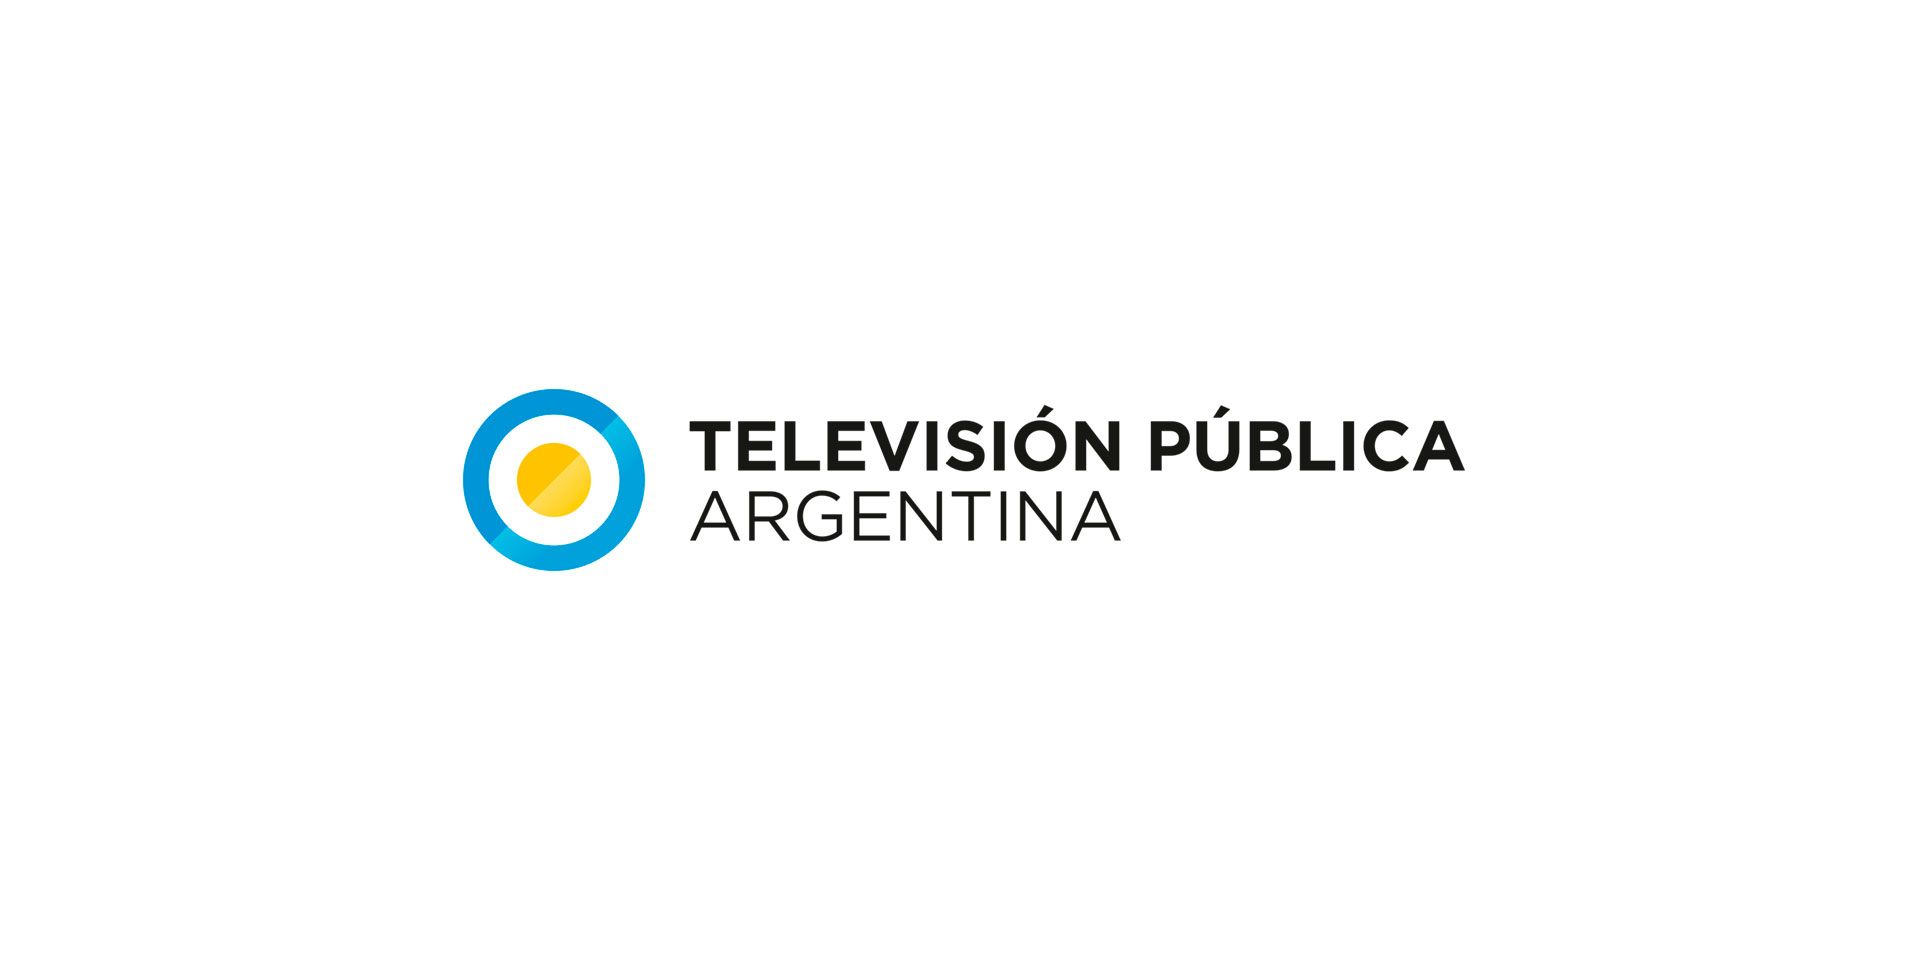 Publica TV. Publica. Публика ТВ Молдова прямой эфир. Vivo TV Argentina. Лаз тв